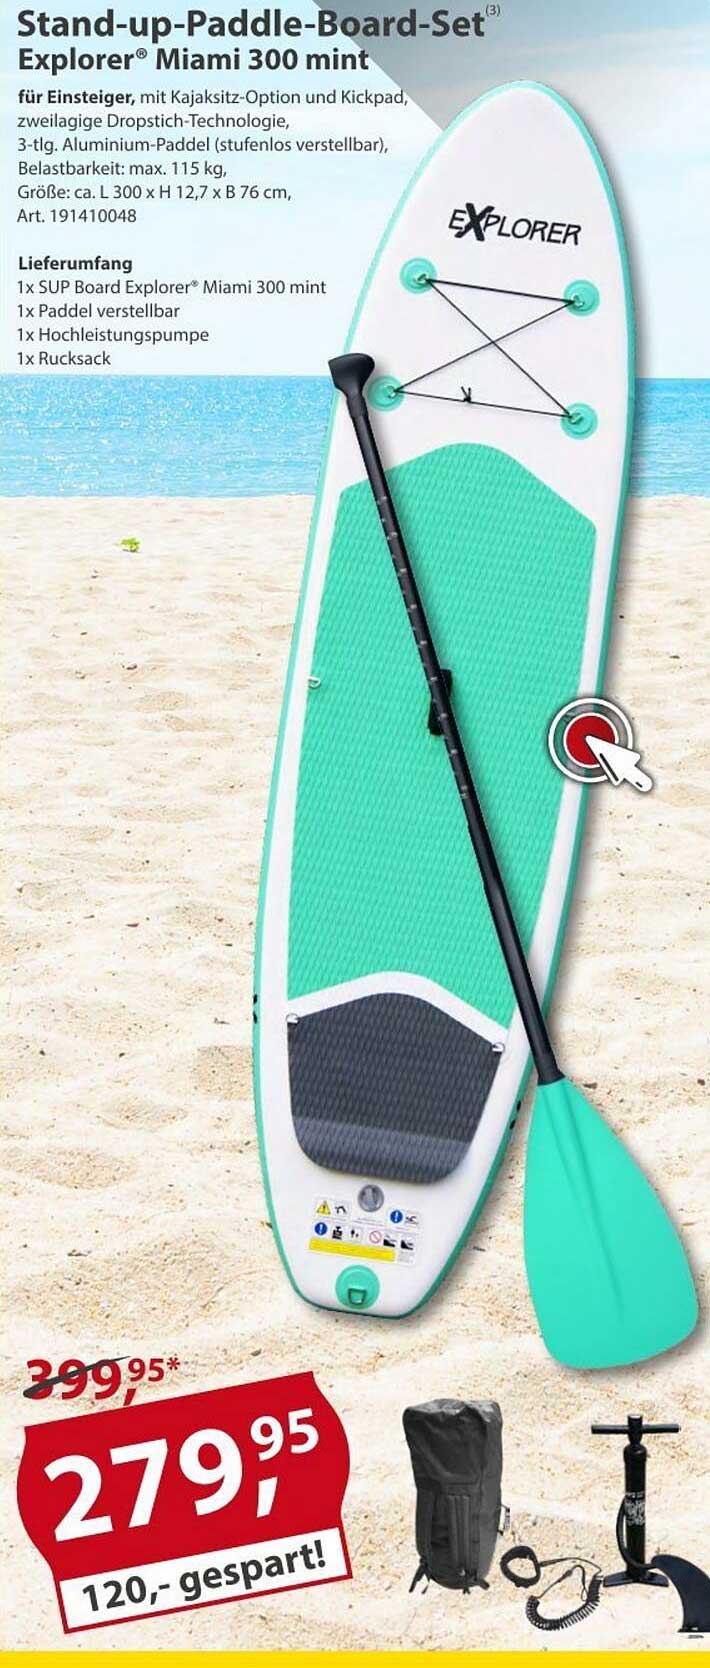 Stand-up-paddle-board-set Explorer Angebot Miami Sonderpreis 300 bei Baumarkt